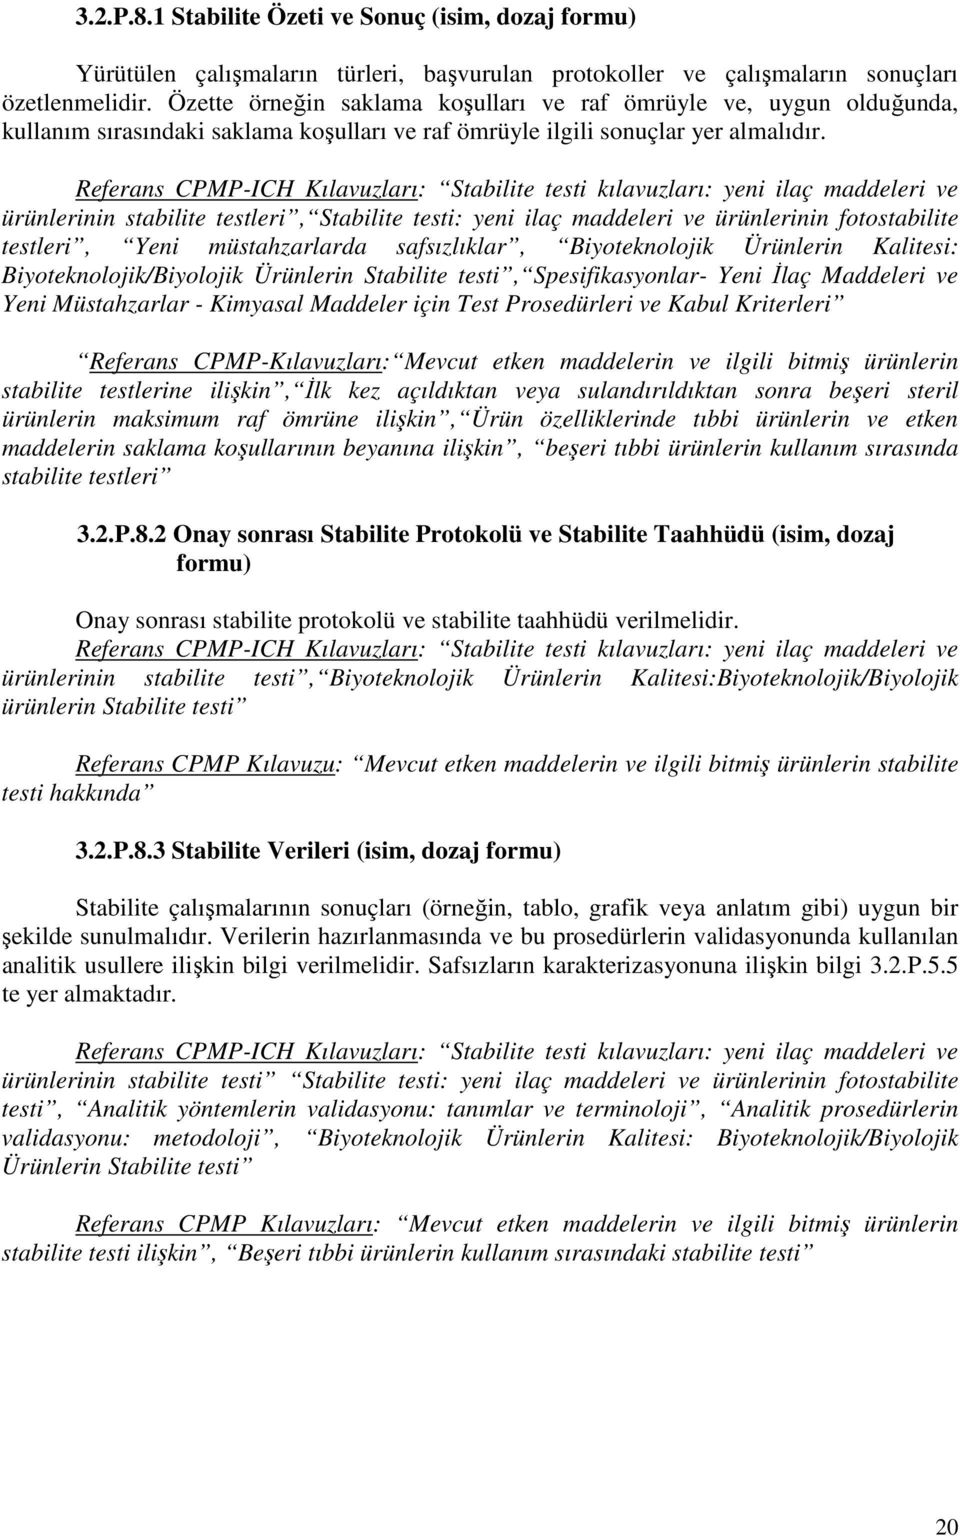 Referans CPMP-ICH Kılavuzları: Stabilite testi kılavuzları: yeni ilaç maddeleri ve ürünlerinin stabilite testleri, Stabilite testi: yeni ilaç maddeleri ve ürünlerinin fotostabilite testleri, Yeni